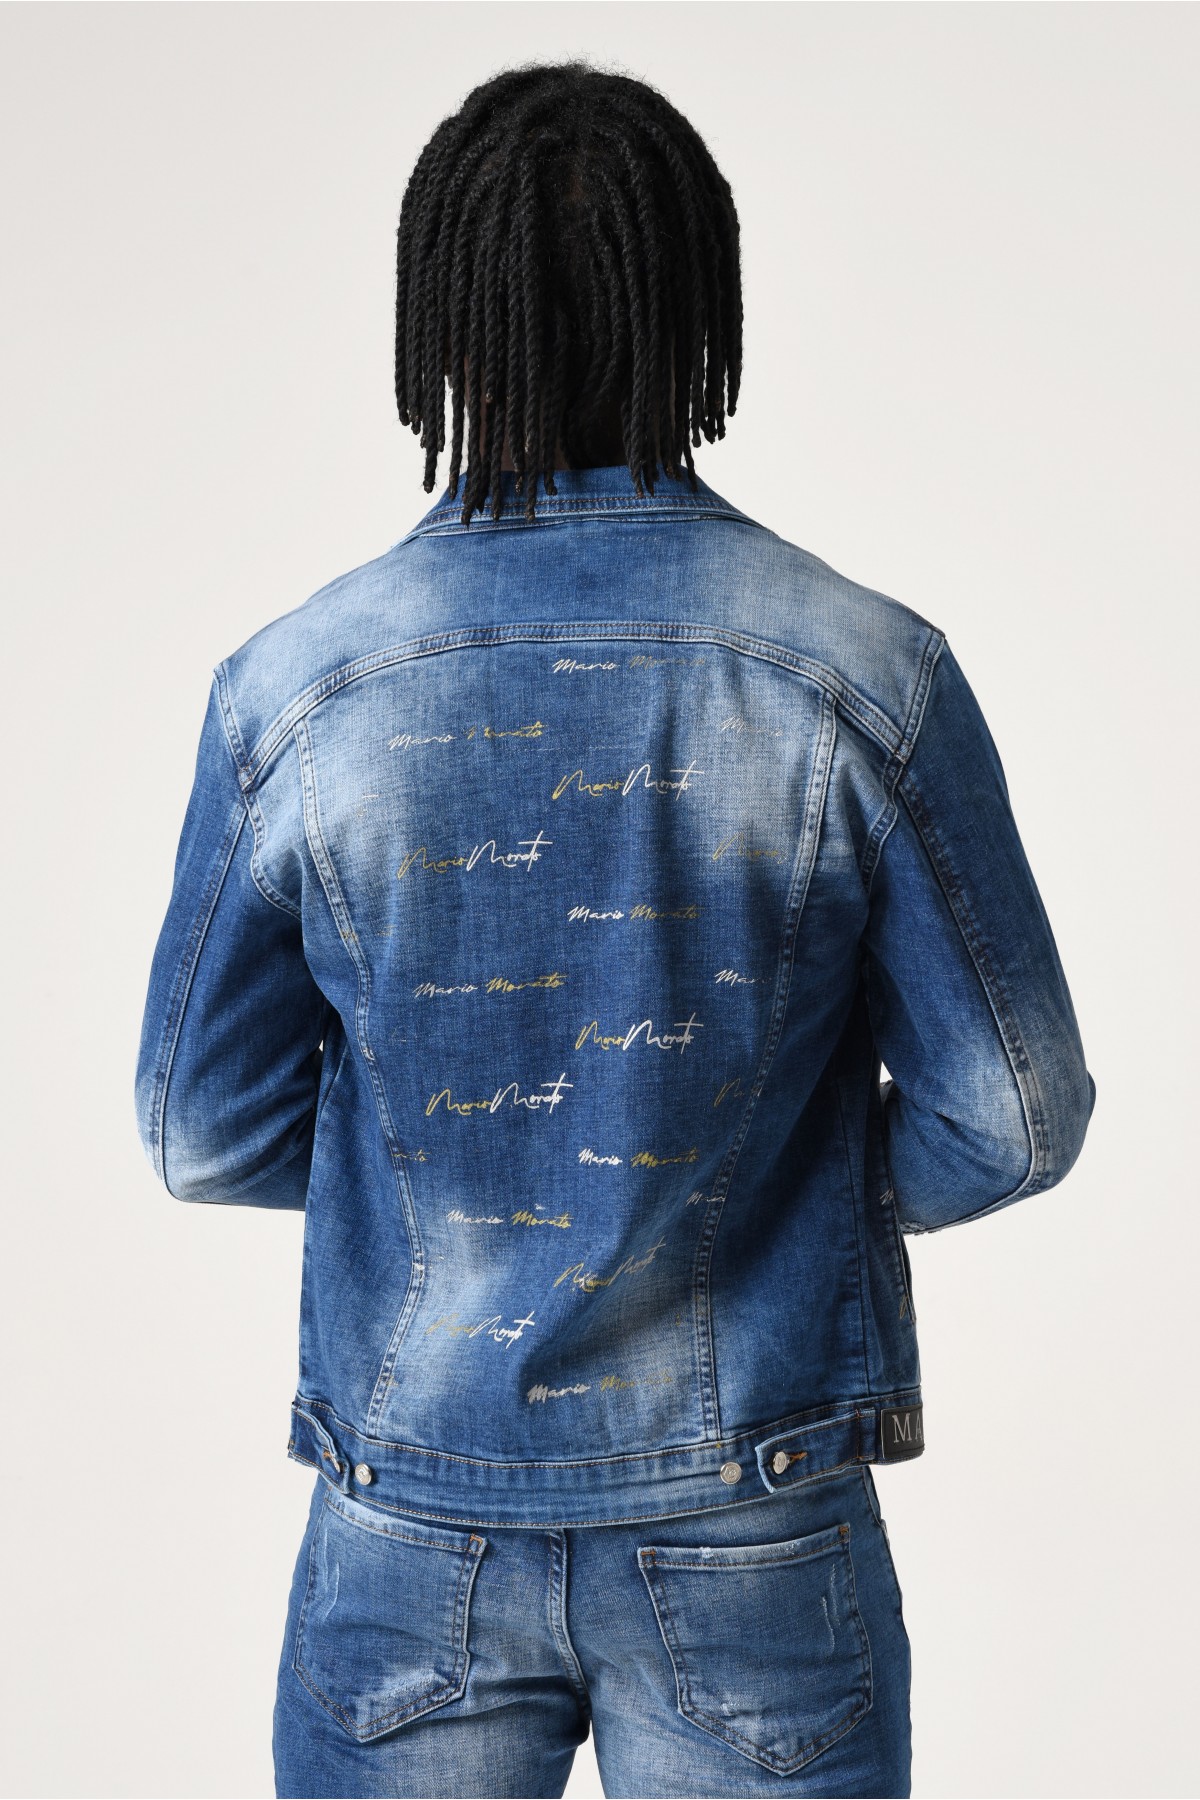 Erkek Denim Ceket - Kolda Açık Mavi ve kesik detaylı ve sırt kısmında yazı detaylı - Koyu Mavi